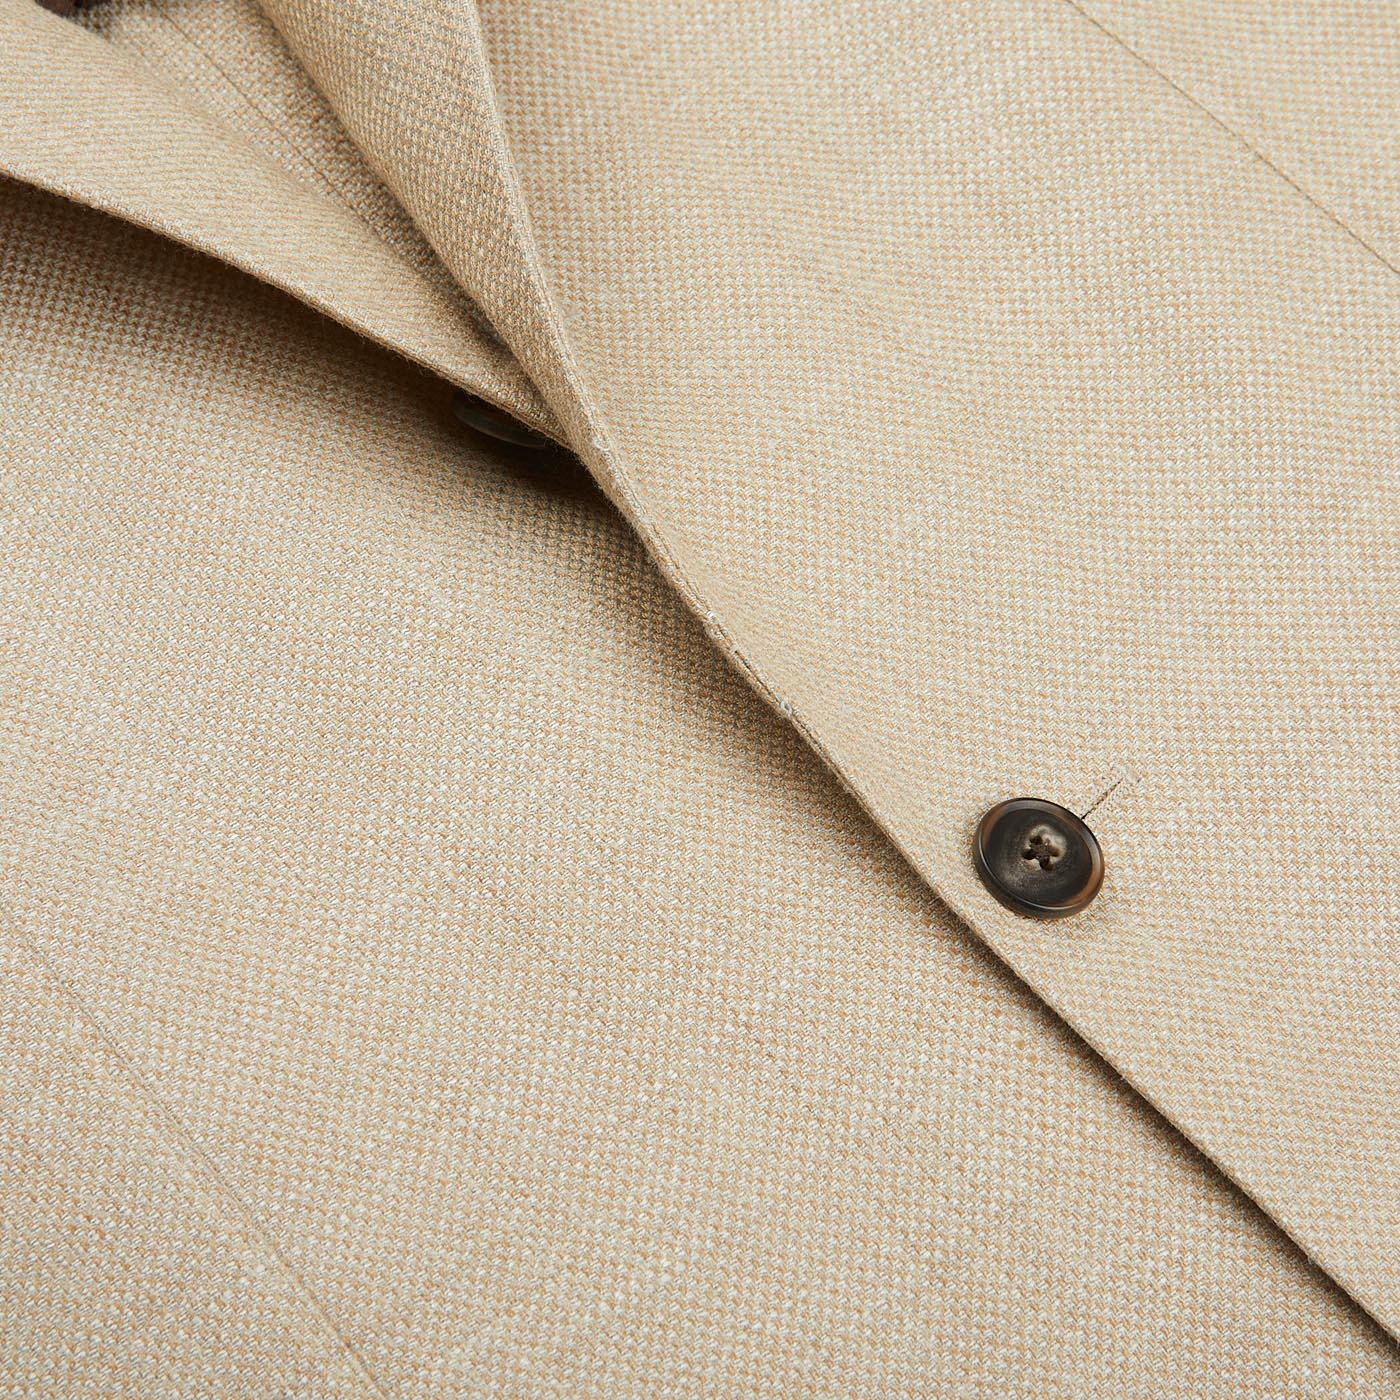 A close up of a Baltzar Sartorial Beige Melange Wool Silk Linen Blazer button.